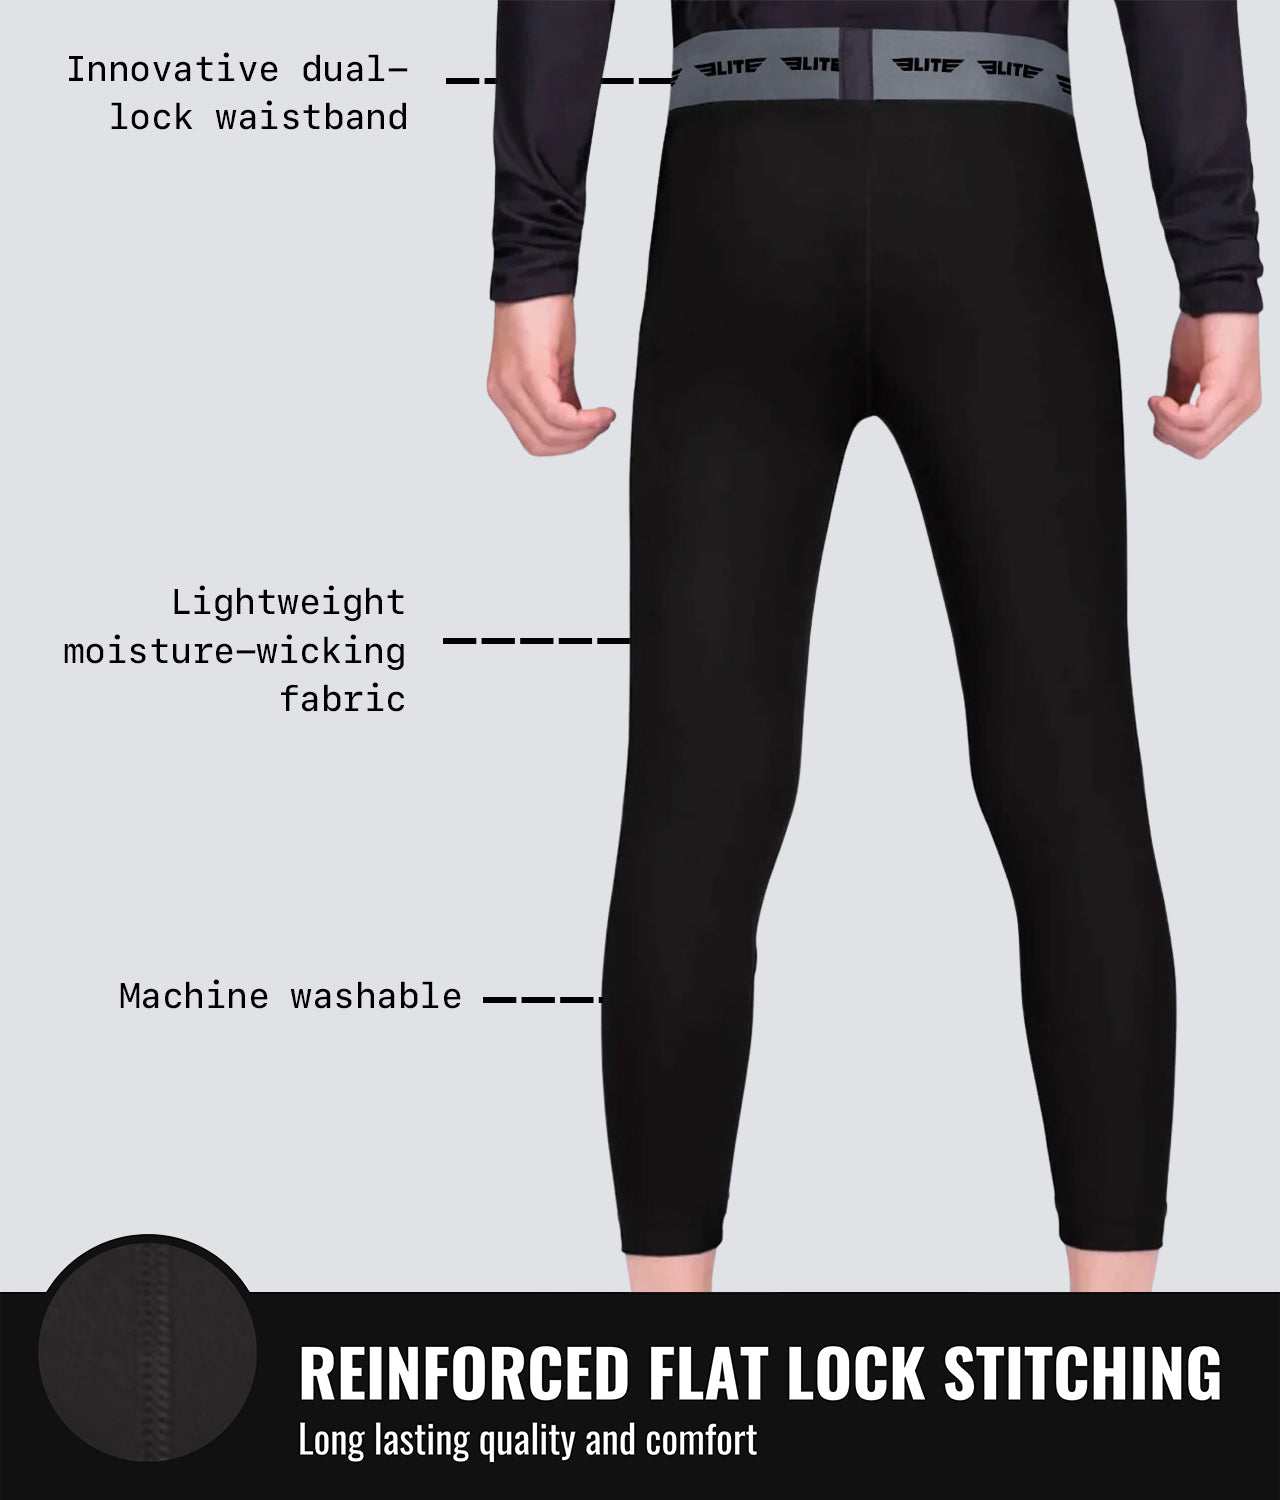 Elite Sports Kids' Plain Black Compression Jiu Jitsu Bjj Spat Pants Flat Lock Stitching